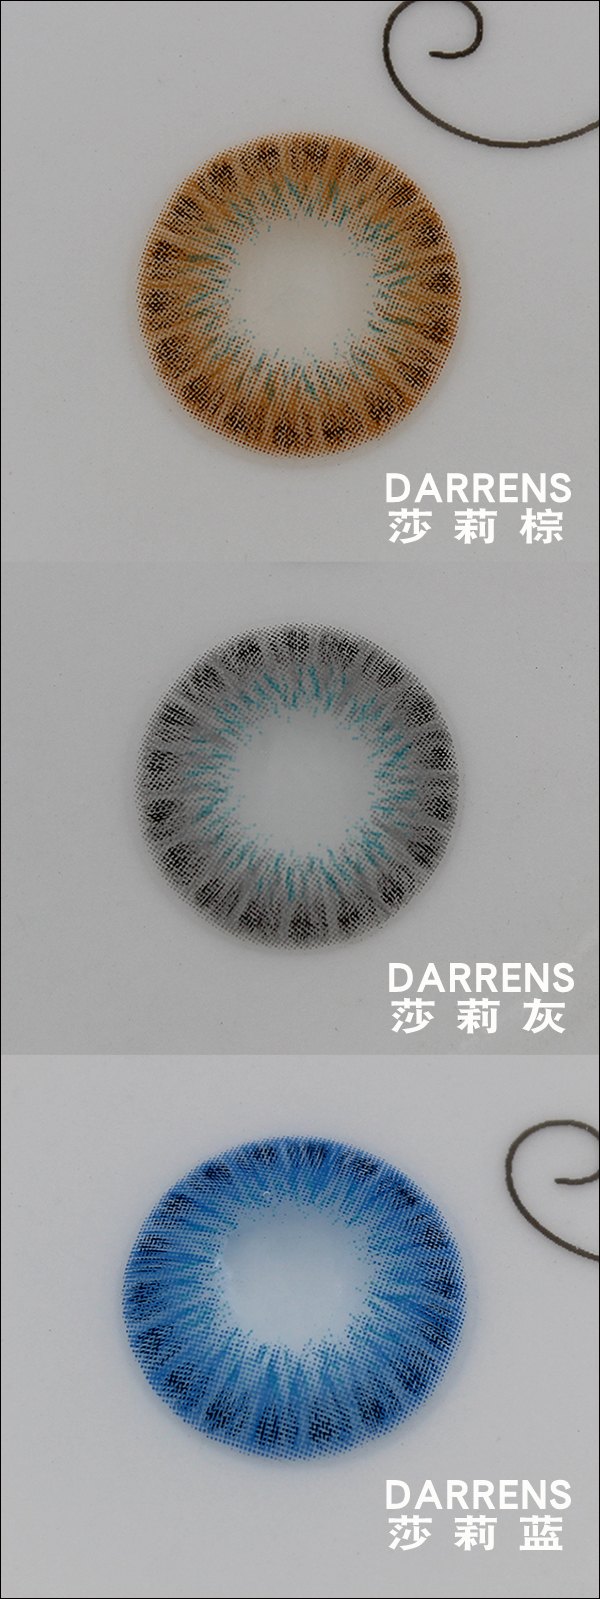  Darrens莎莉系列实物图-(1) (1).jpg